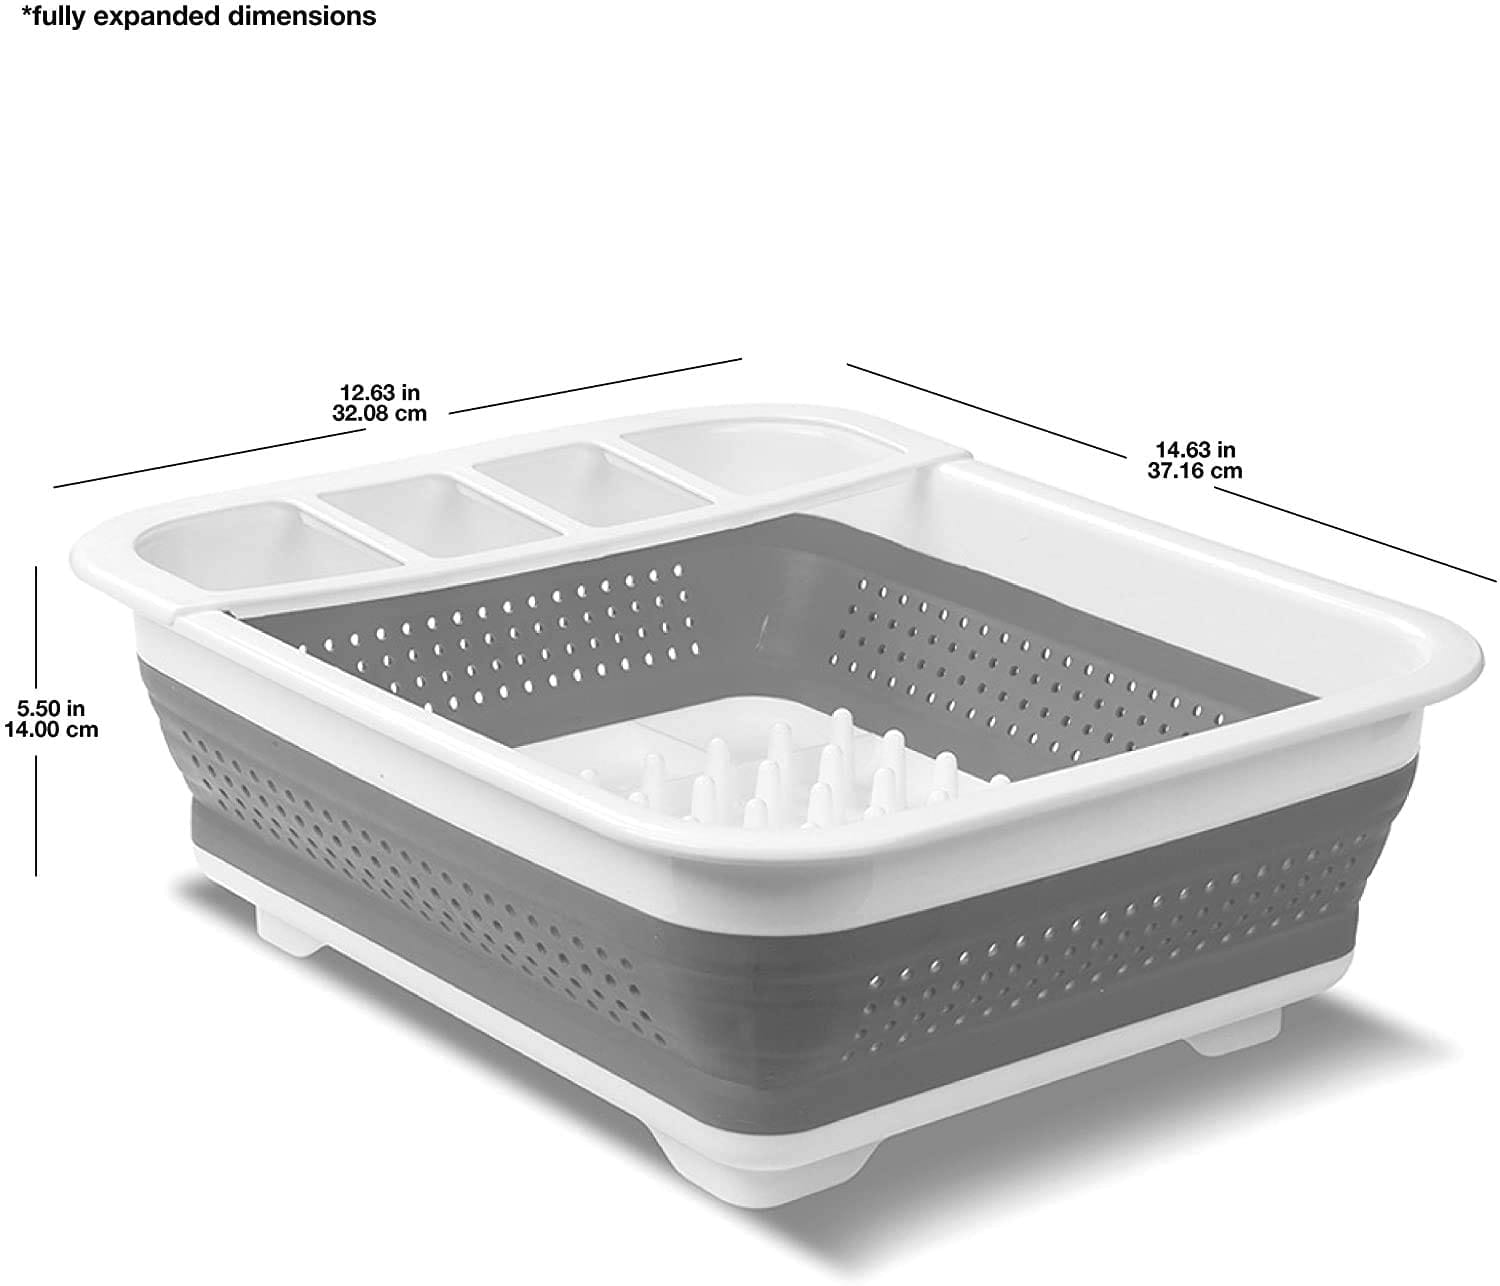 Escurridor plegable de almacenamiento y secado de platos, estilo cesta;  organizador de vajilla portátil ideal para la cocina, cubierta de cocina